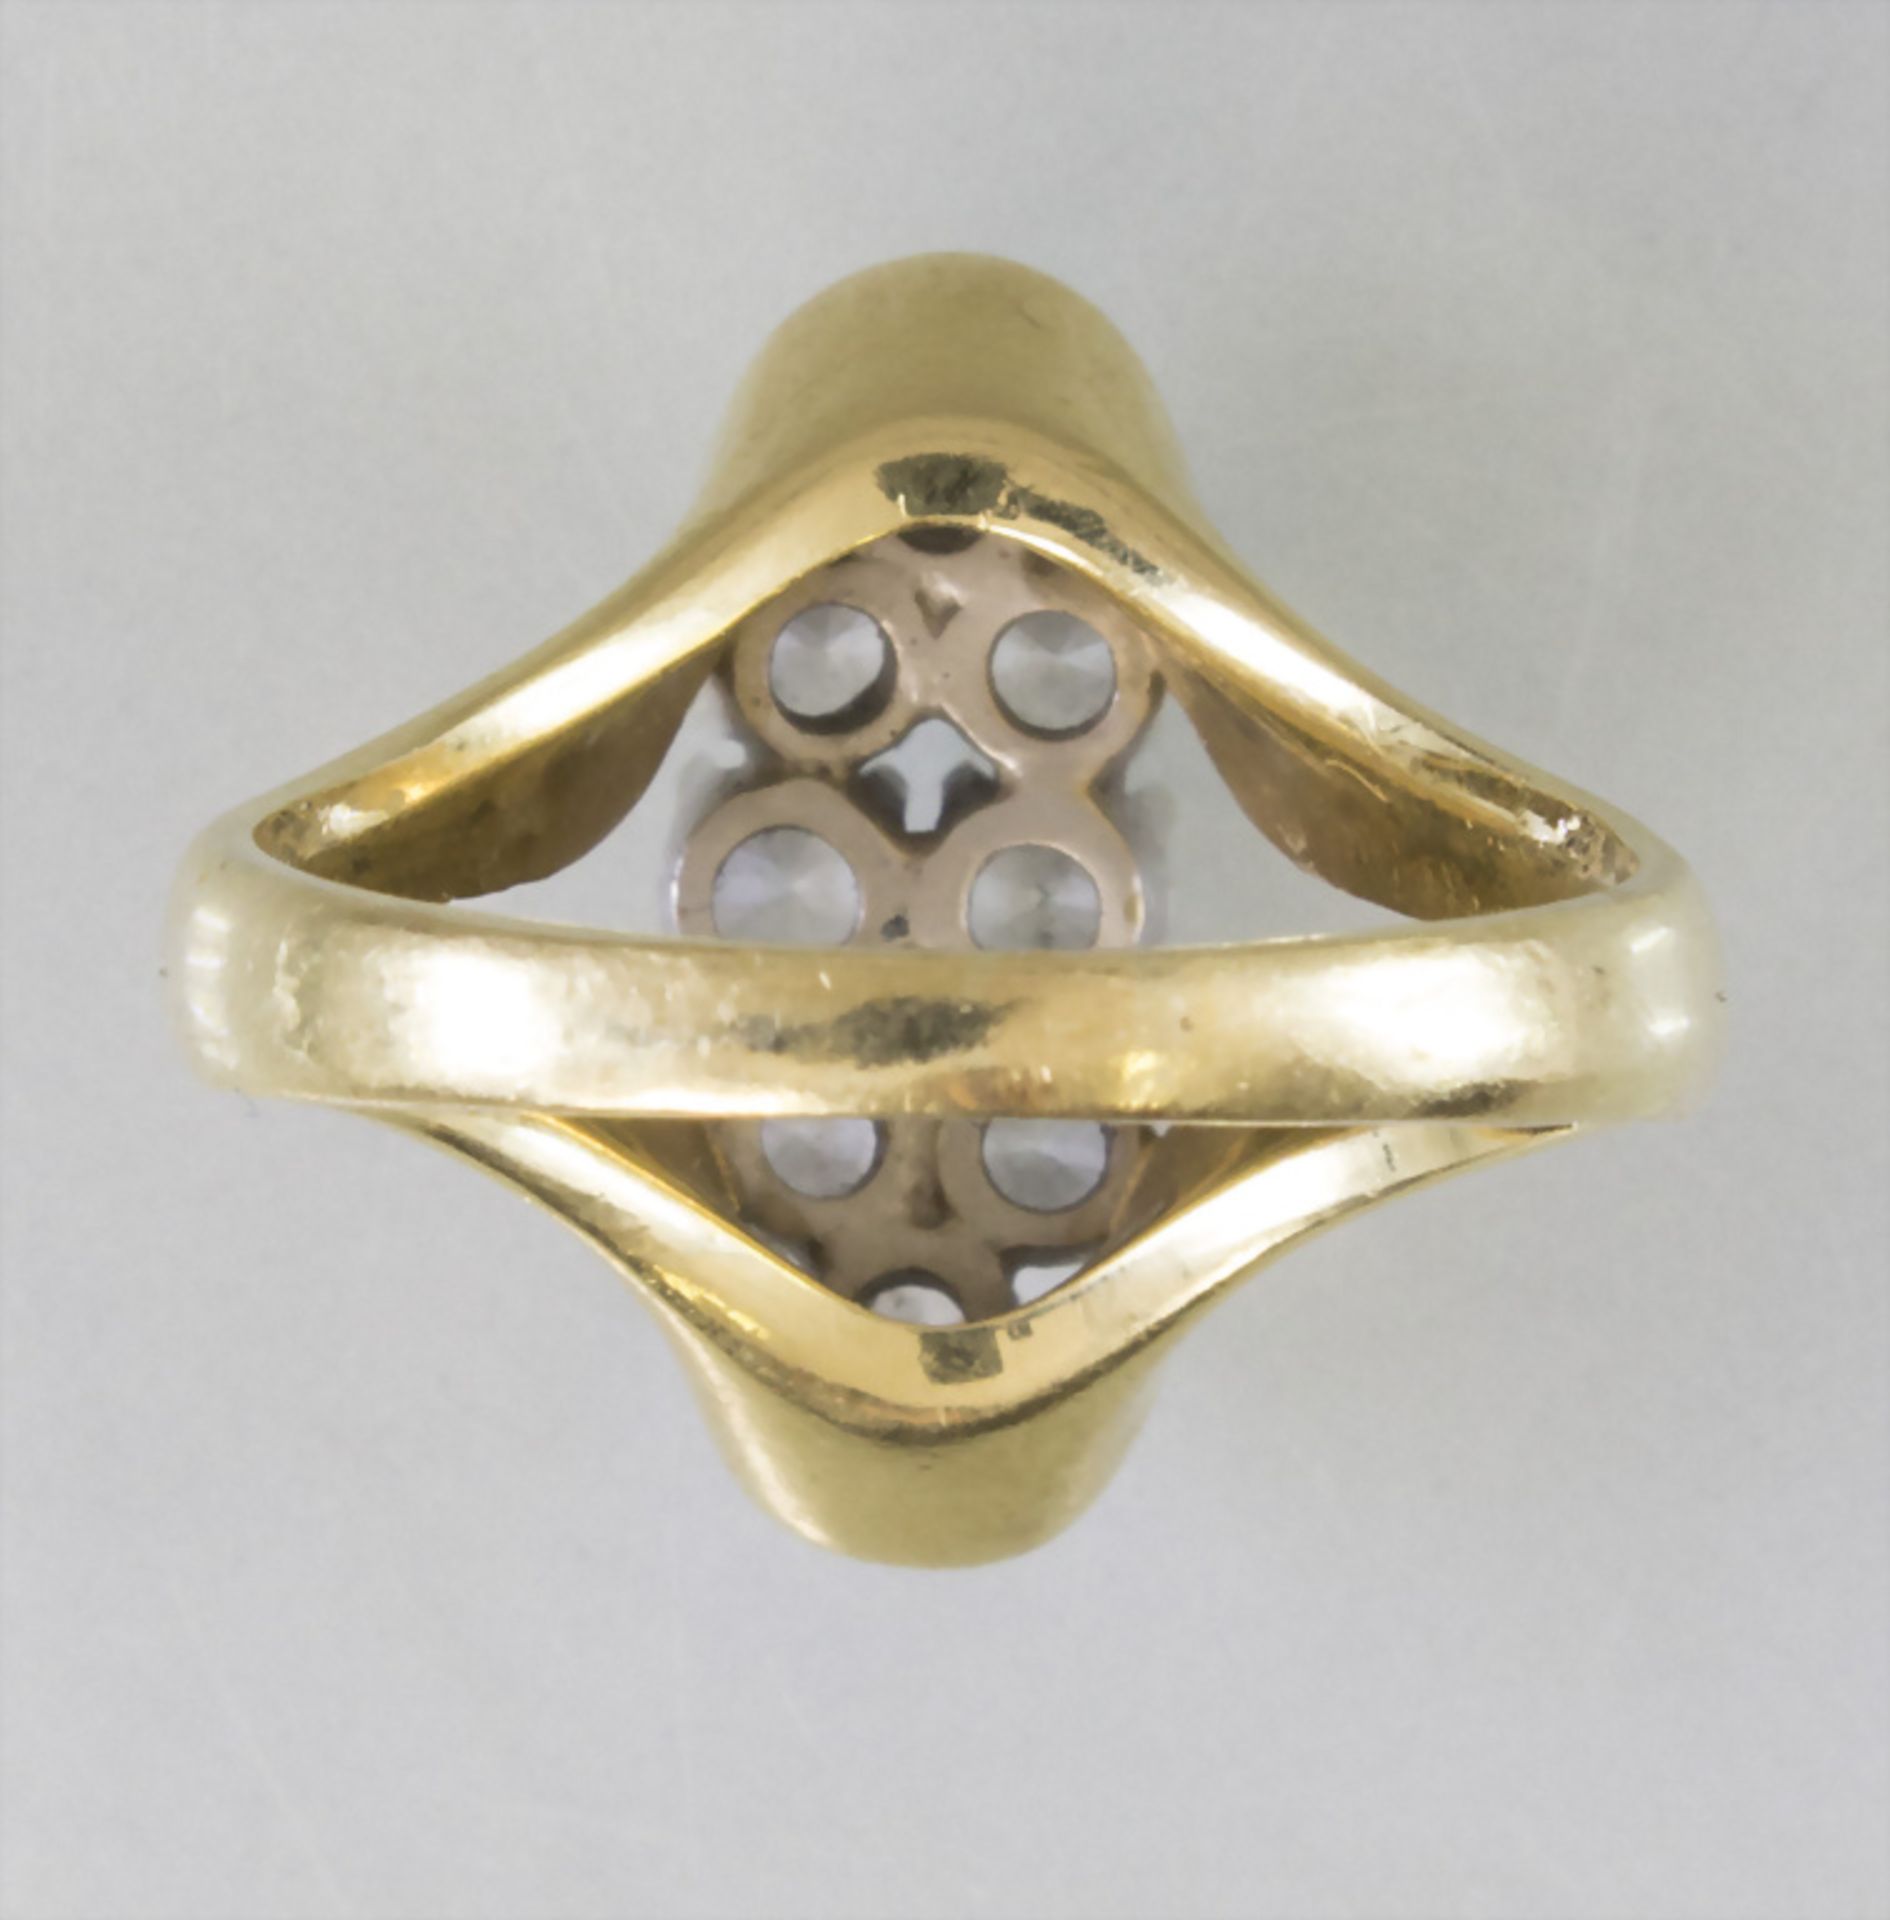 Damenring in Gelbgold mit Diamanten / A ladies 18k gold ring with diamonds - Bild 3 aus 4